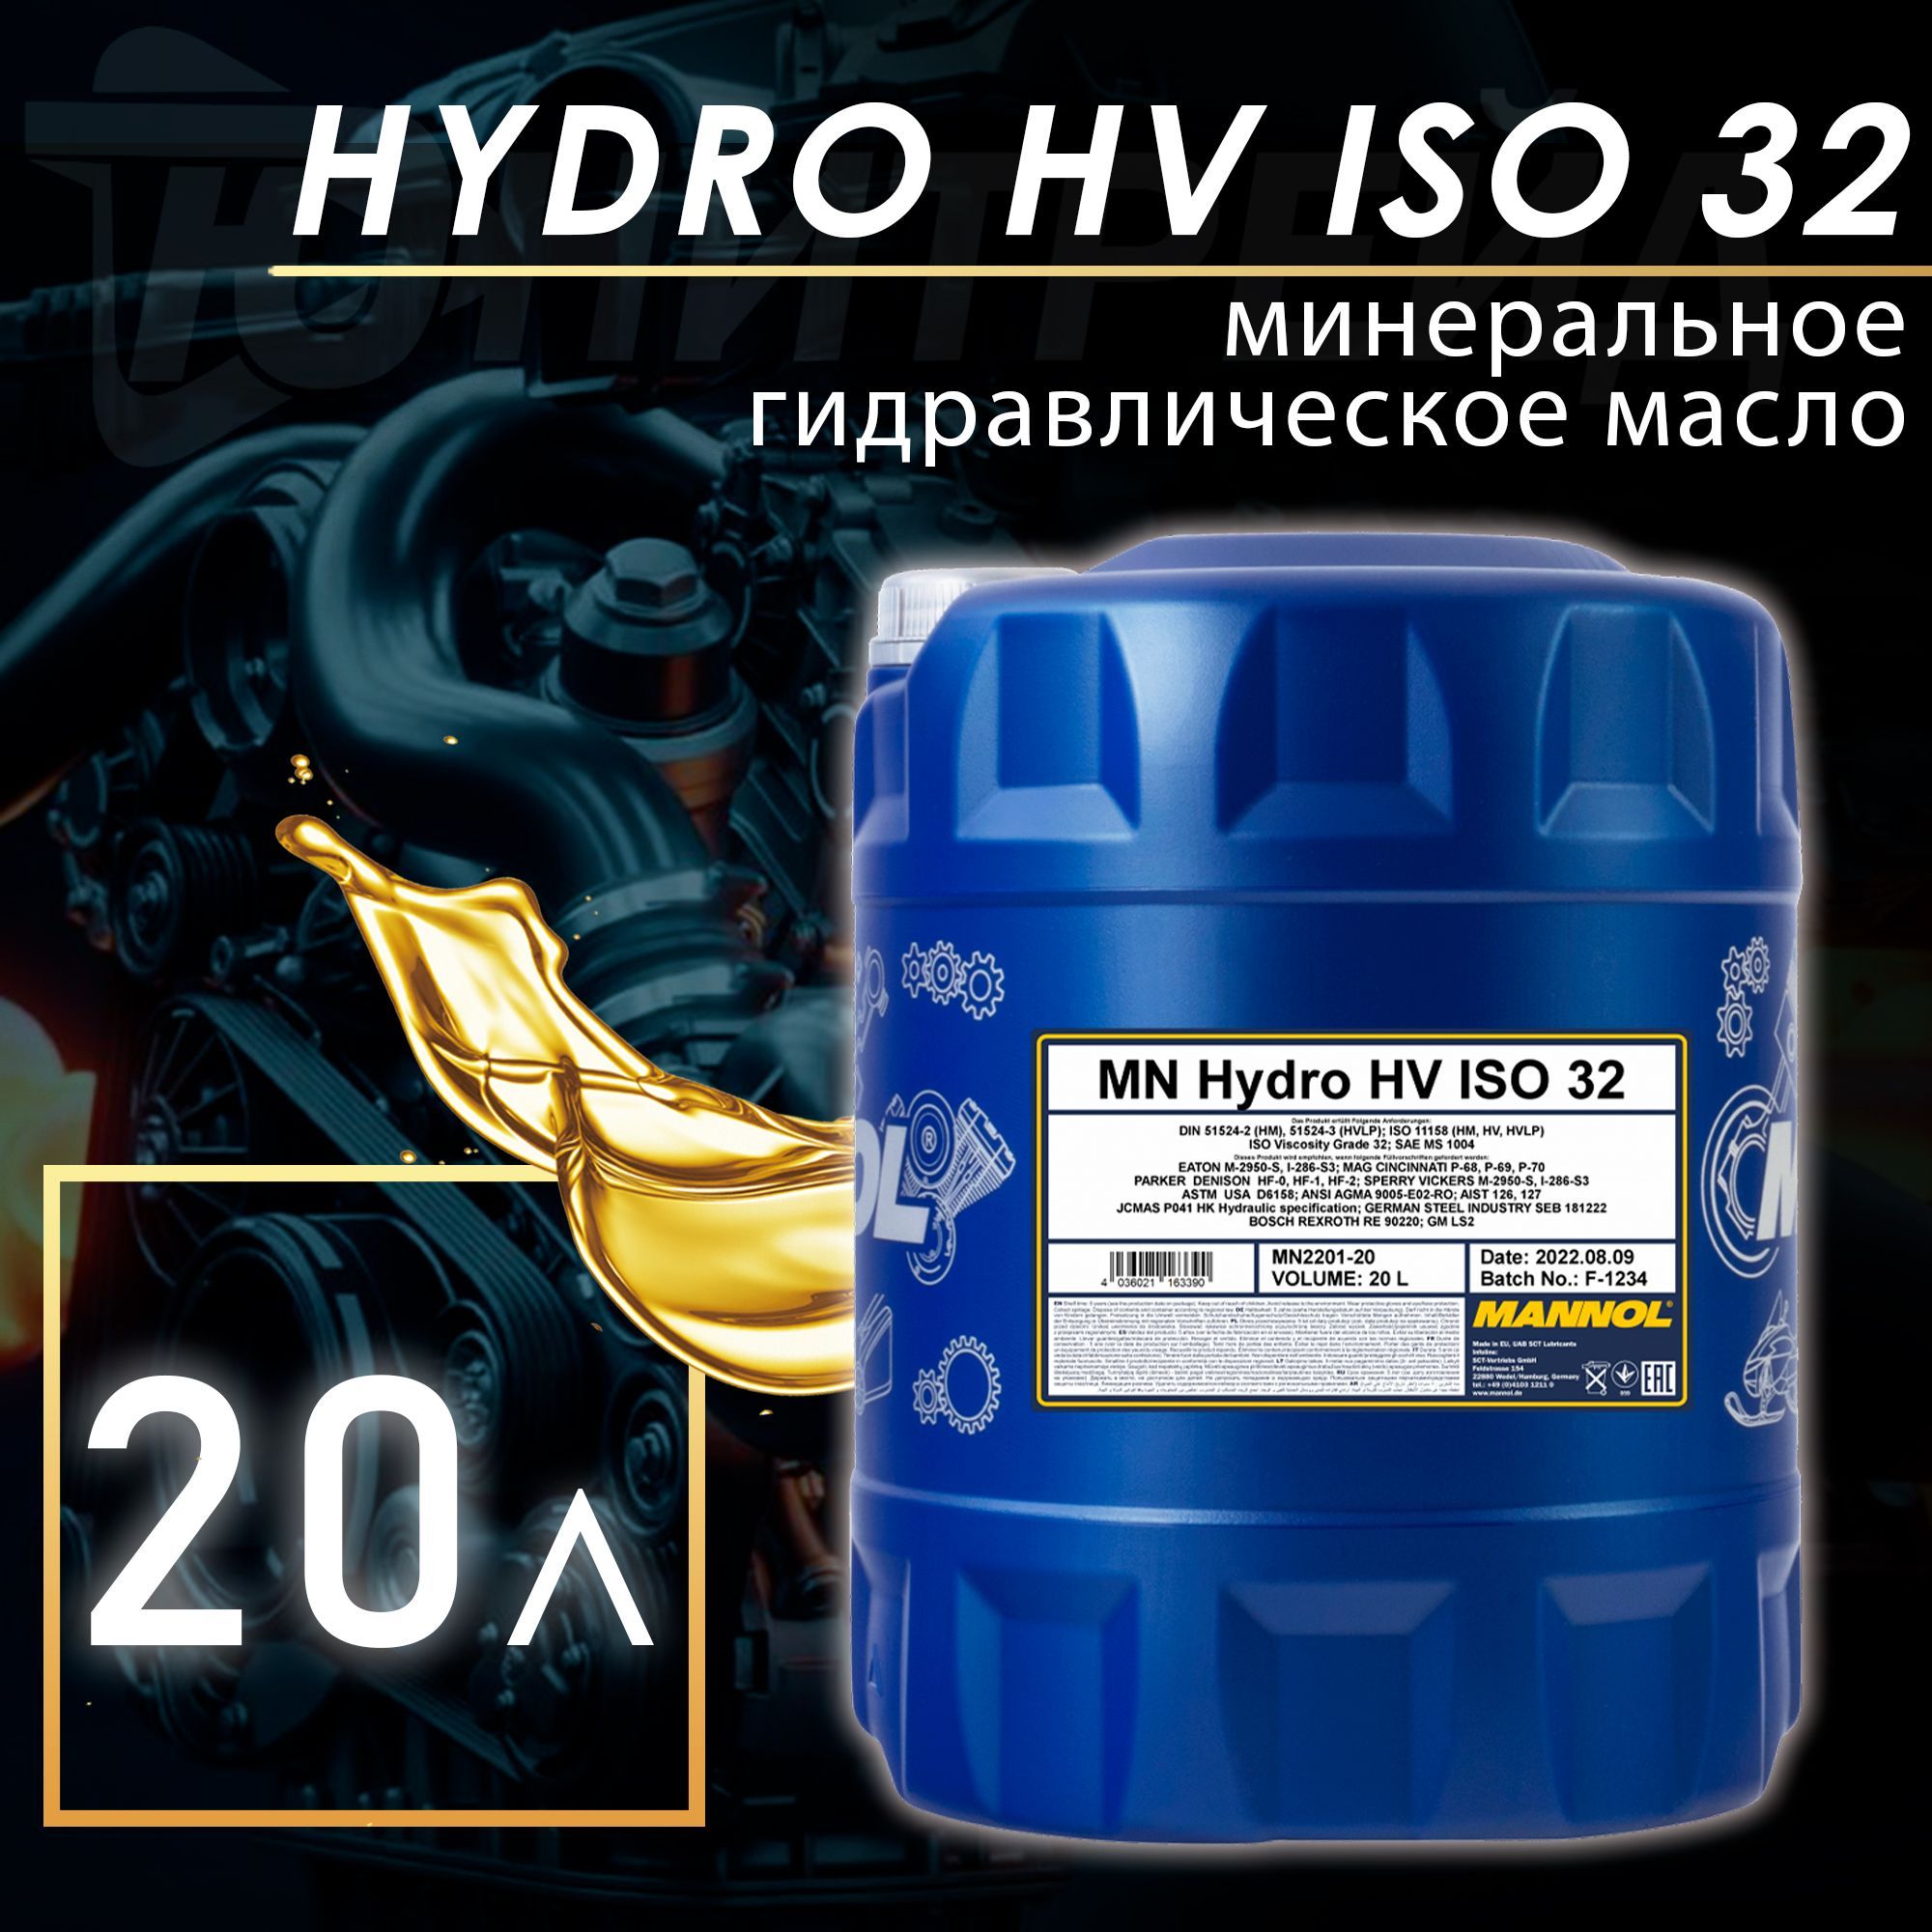 Масло компрессорное Hammer Flex 501-012 1л ISO VG-100. Hydros гидравлическое масло